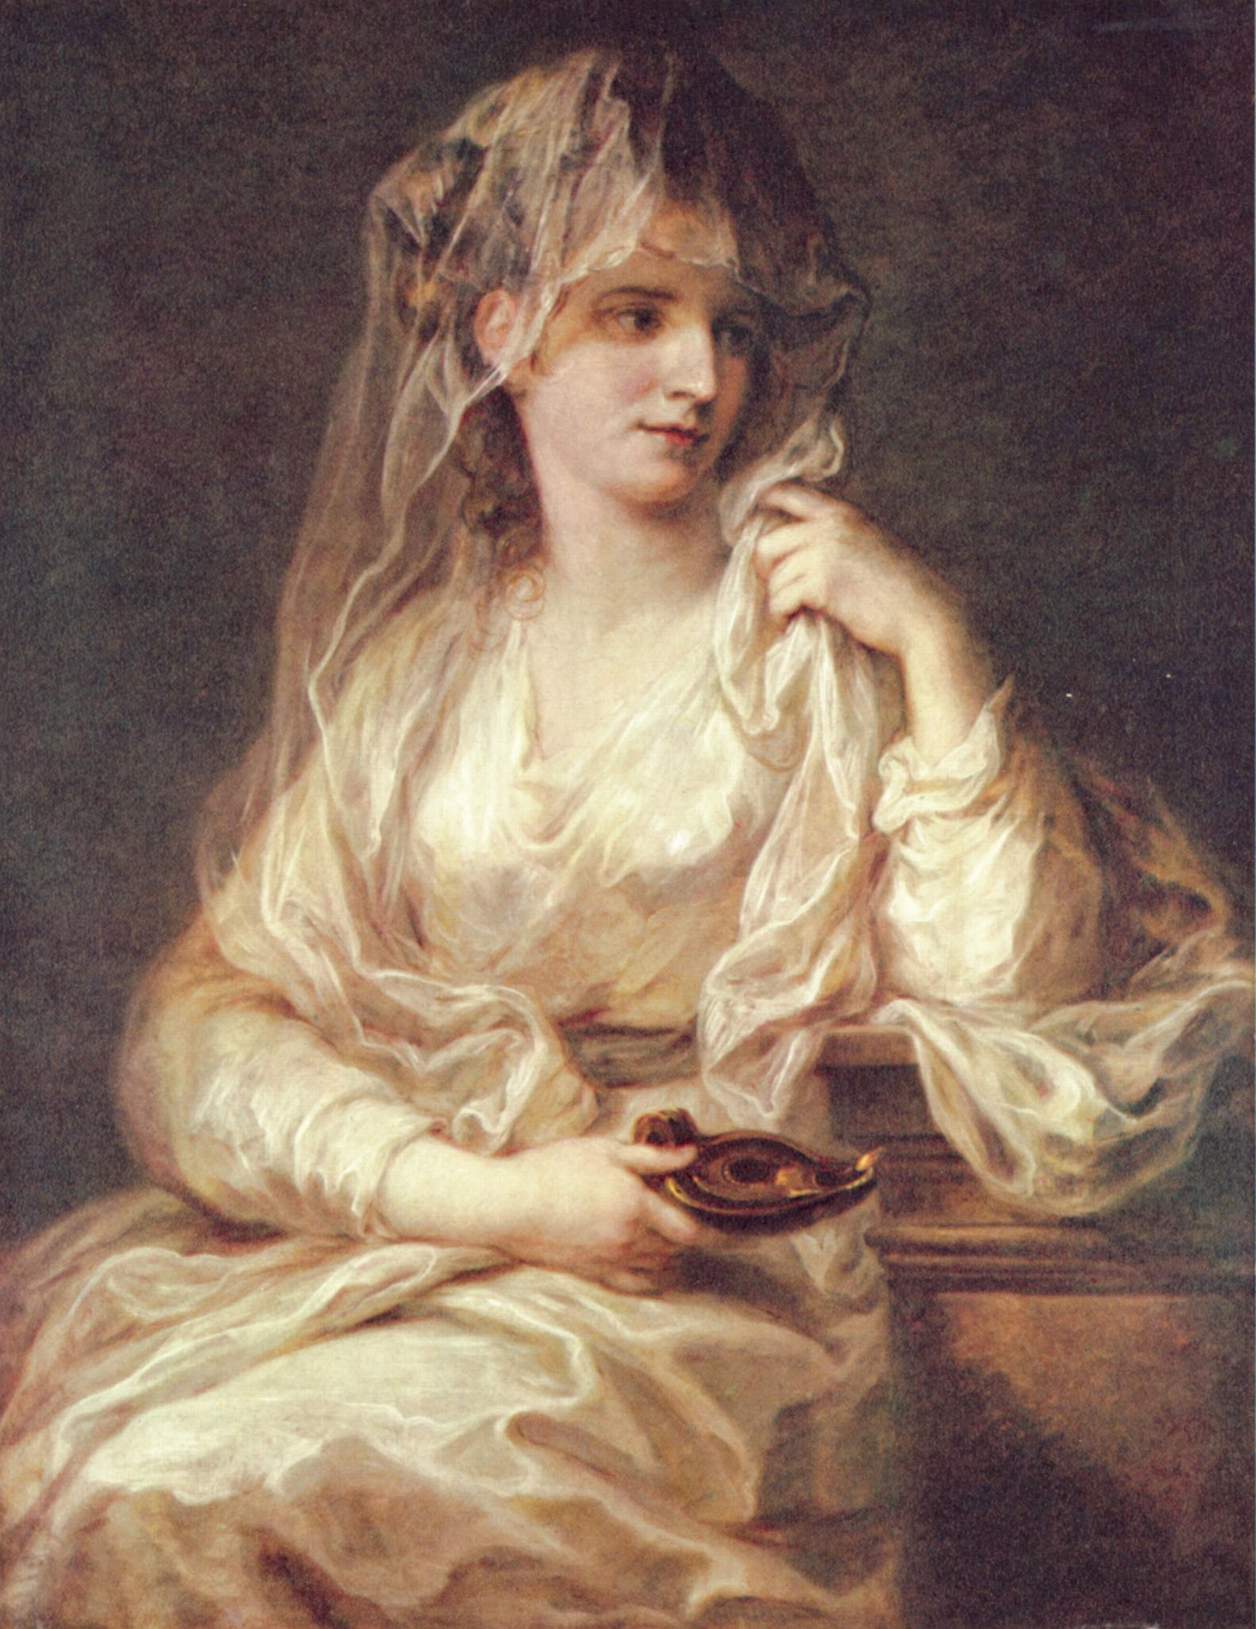 Portrait of a Woman, 1755 - John Singleton Copley - WikiArt.org